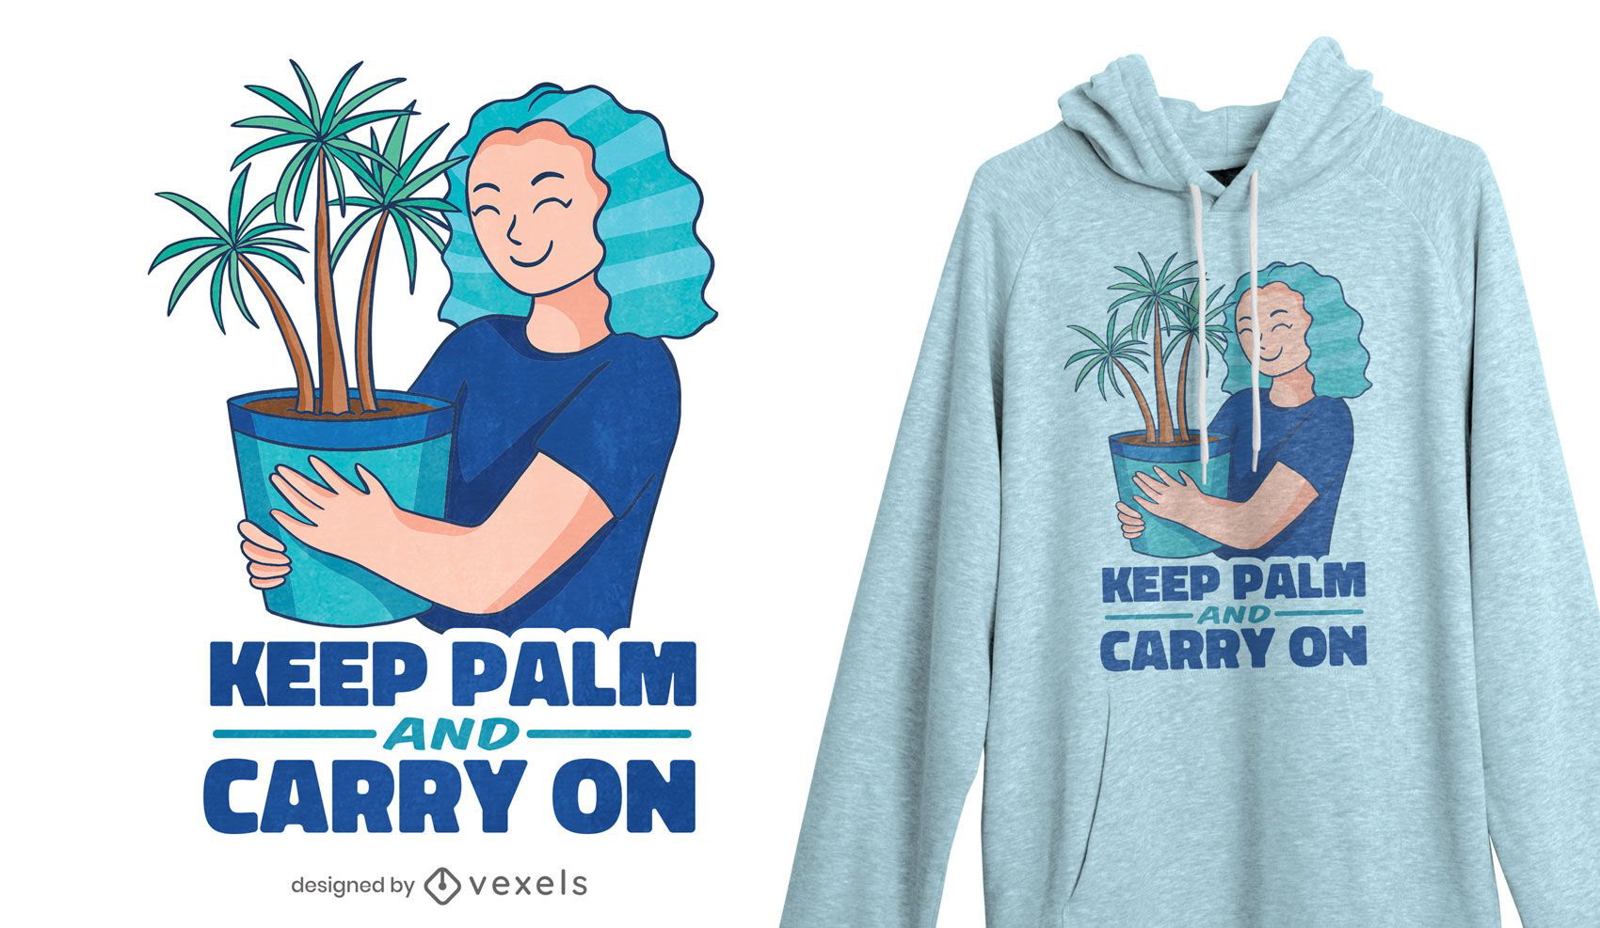 Keep palm t-shirt design